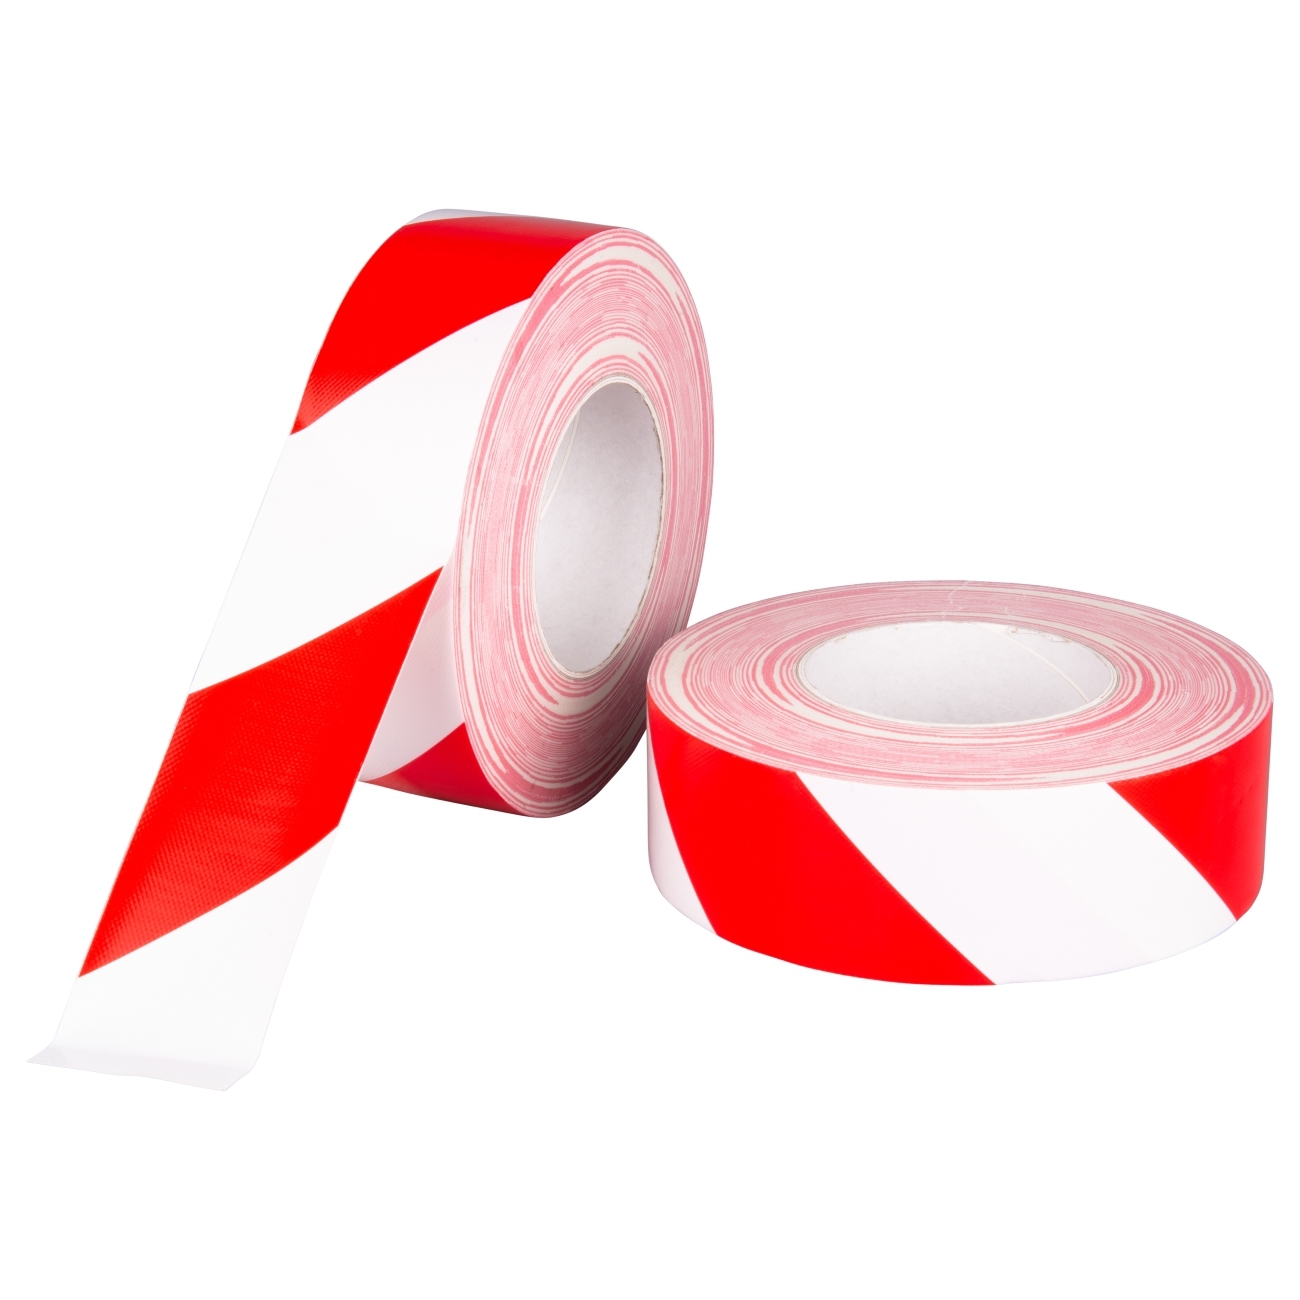 S-K-S 197 Fabric tape 25mmx50m red / white